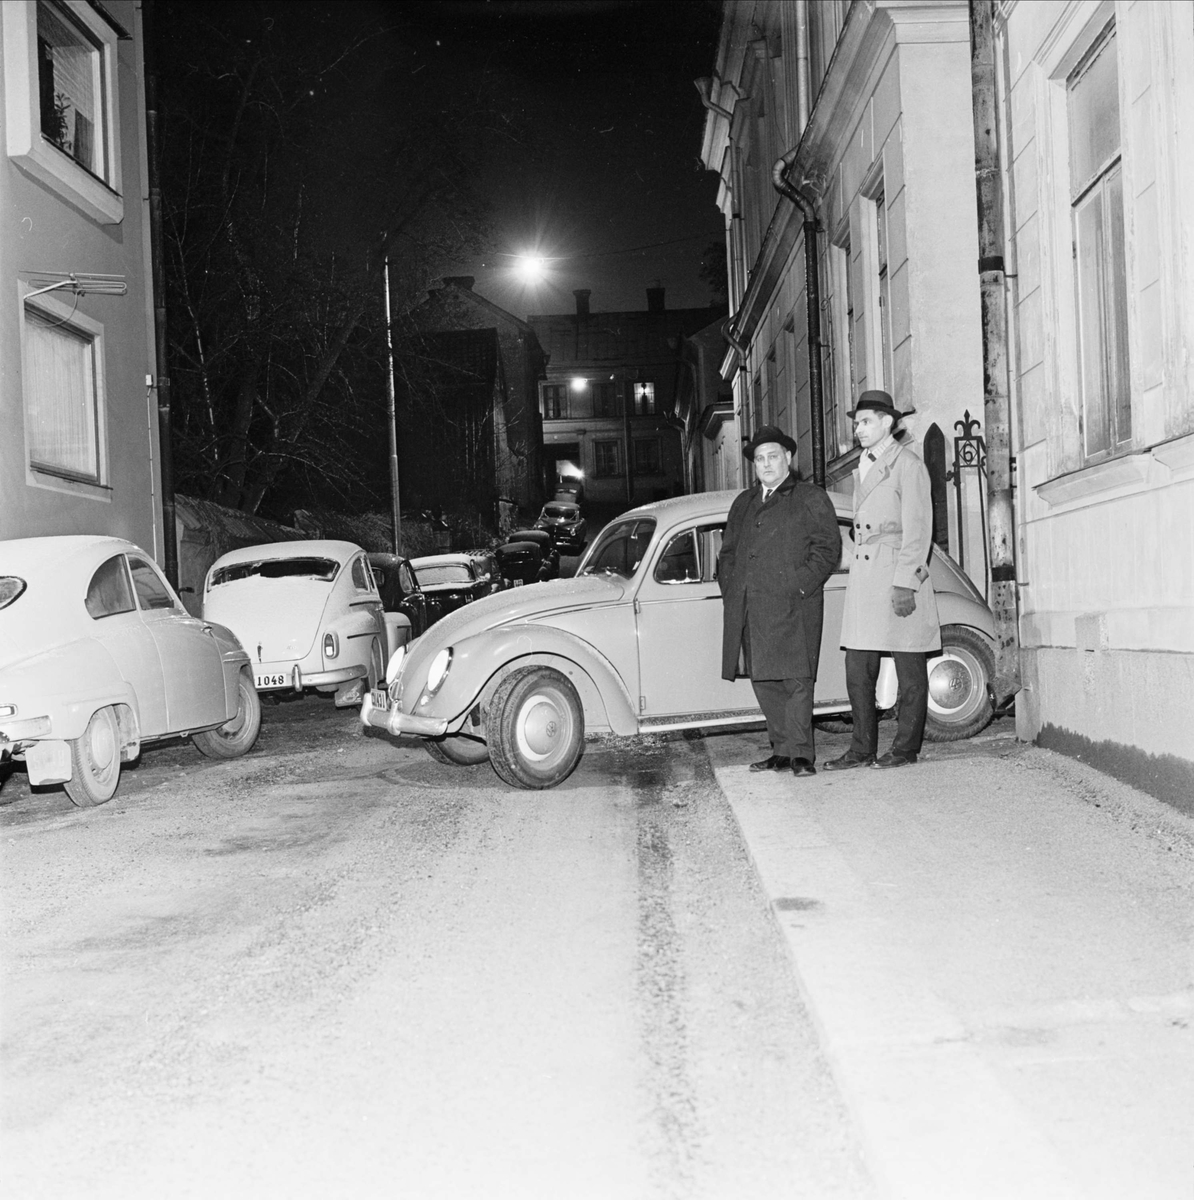 "Uppsalas parkeringsproblem växer. Sjuttiofem p-syndare på en dag", överkonstapel Yngve Svensson och polisman Bengt Ekström på Svartmangatan, Uppsala 1964